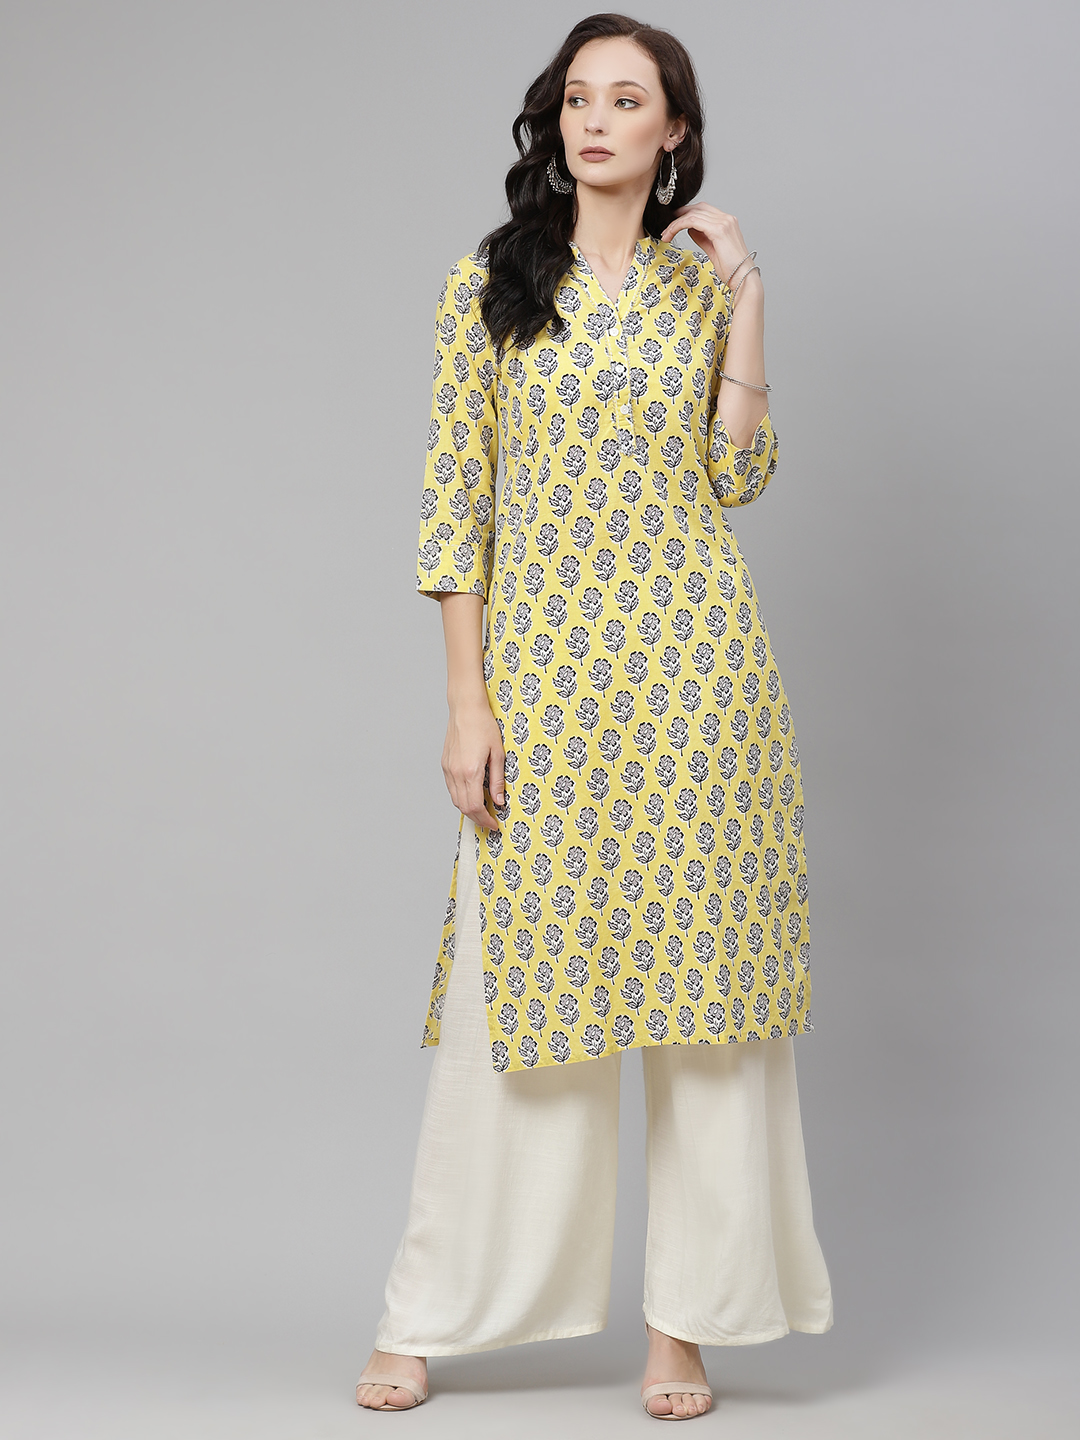 Designer Dresses For Women UK | Punjaban Designer Boutique